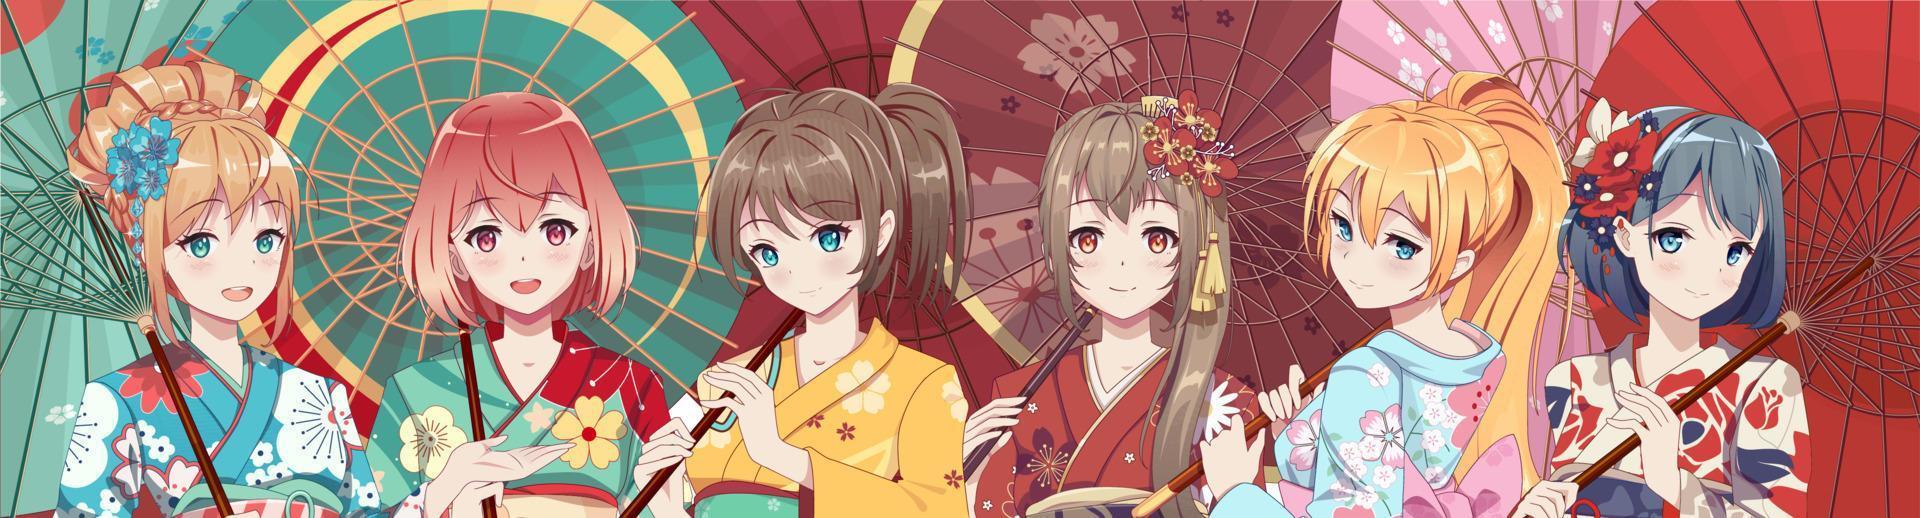 groupe de filles de manga anime en costume de kimono japonais traditionnel tenant un parapluie en papier. illustration vectorielle sur fond isolé vecteur